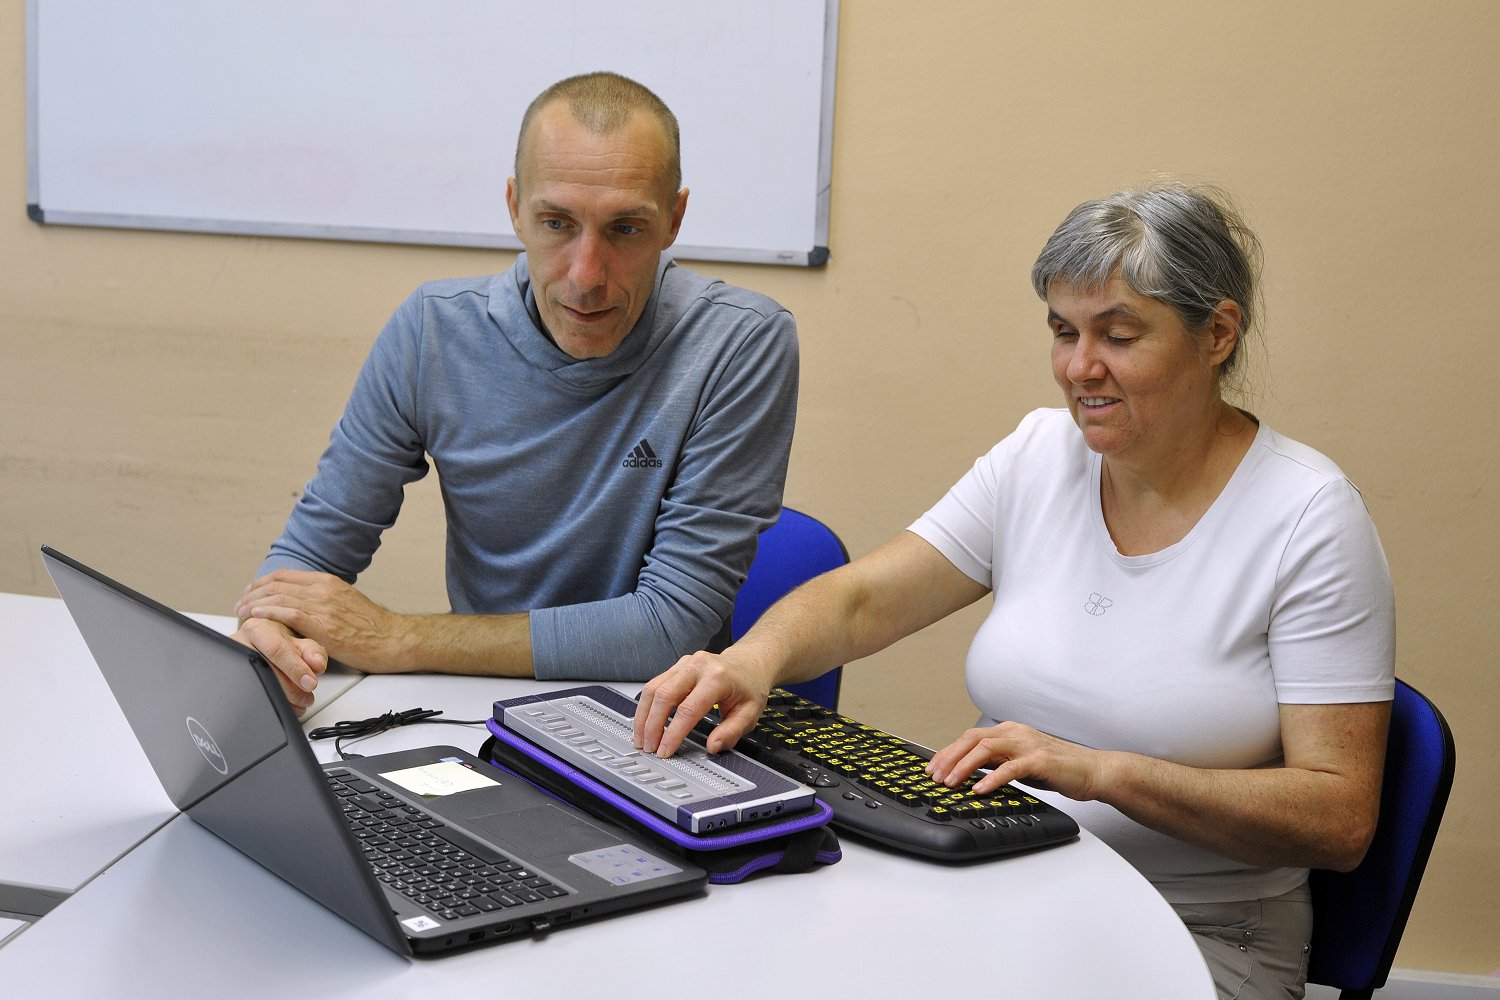 Ženska s slepoto sedi na modrem stolu in se s pomočjo učitelja uči brajeve pisave. Levo roko ima položeno na tipkovnico desno roko na brajevo vrstico. Pred brajevo vrstico je odprt prenosni računalnik črne barve.